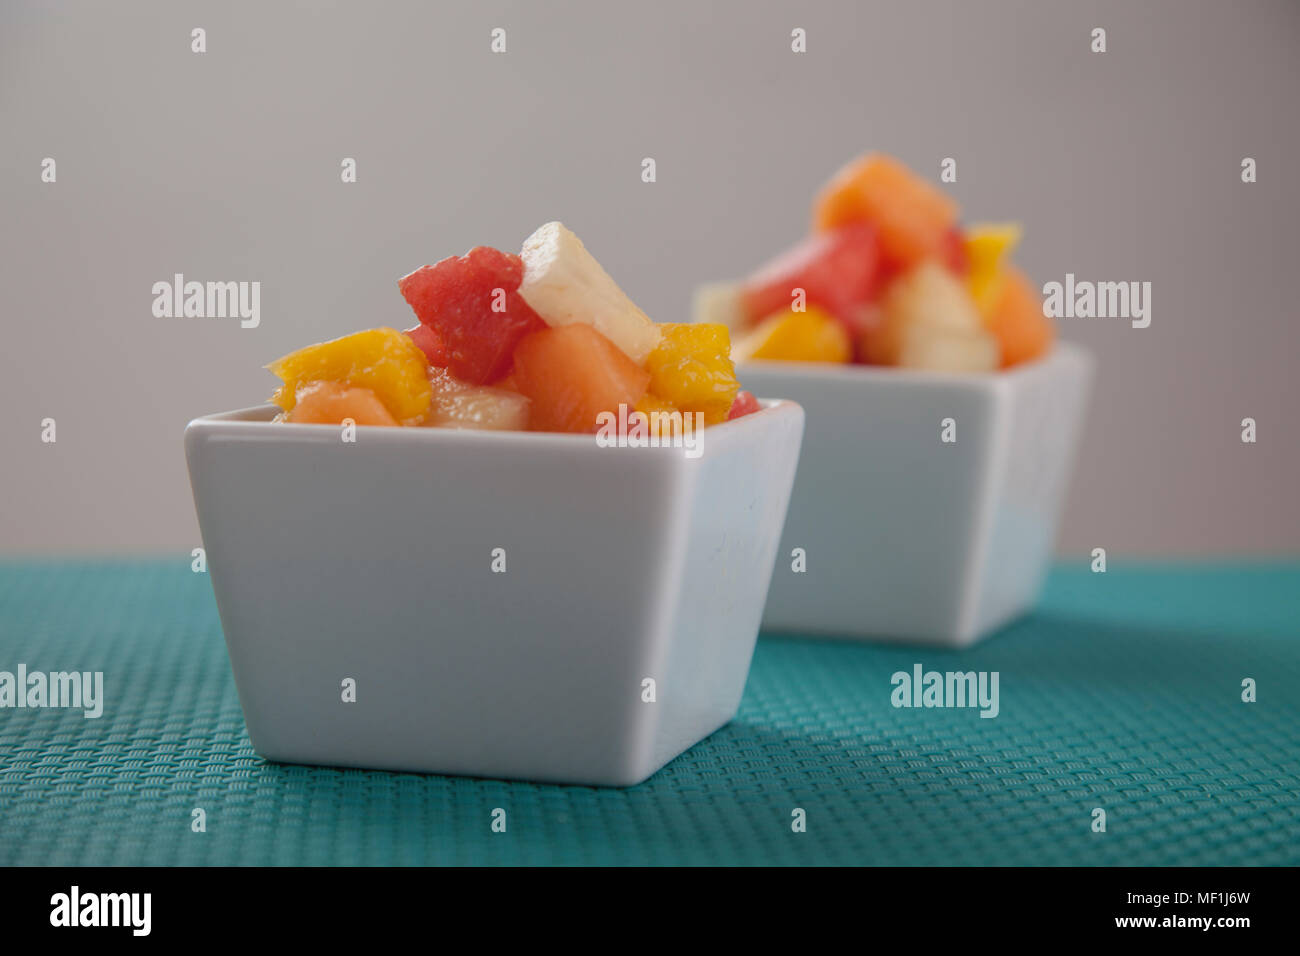 Obst Salat Mischung aus Melone, Banane, Melone, Orange und Ananas in einer kleinen Porzellan Schüssel, Frühstück oder gesunden Snack, Konzept der Gewichtsverlust Stockfoto